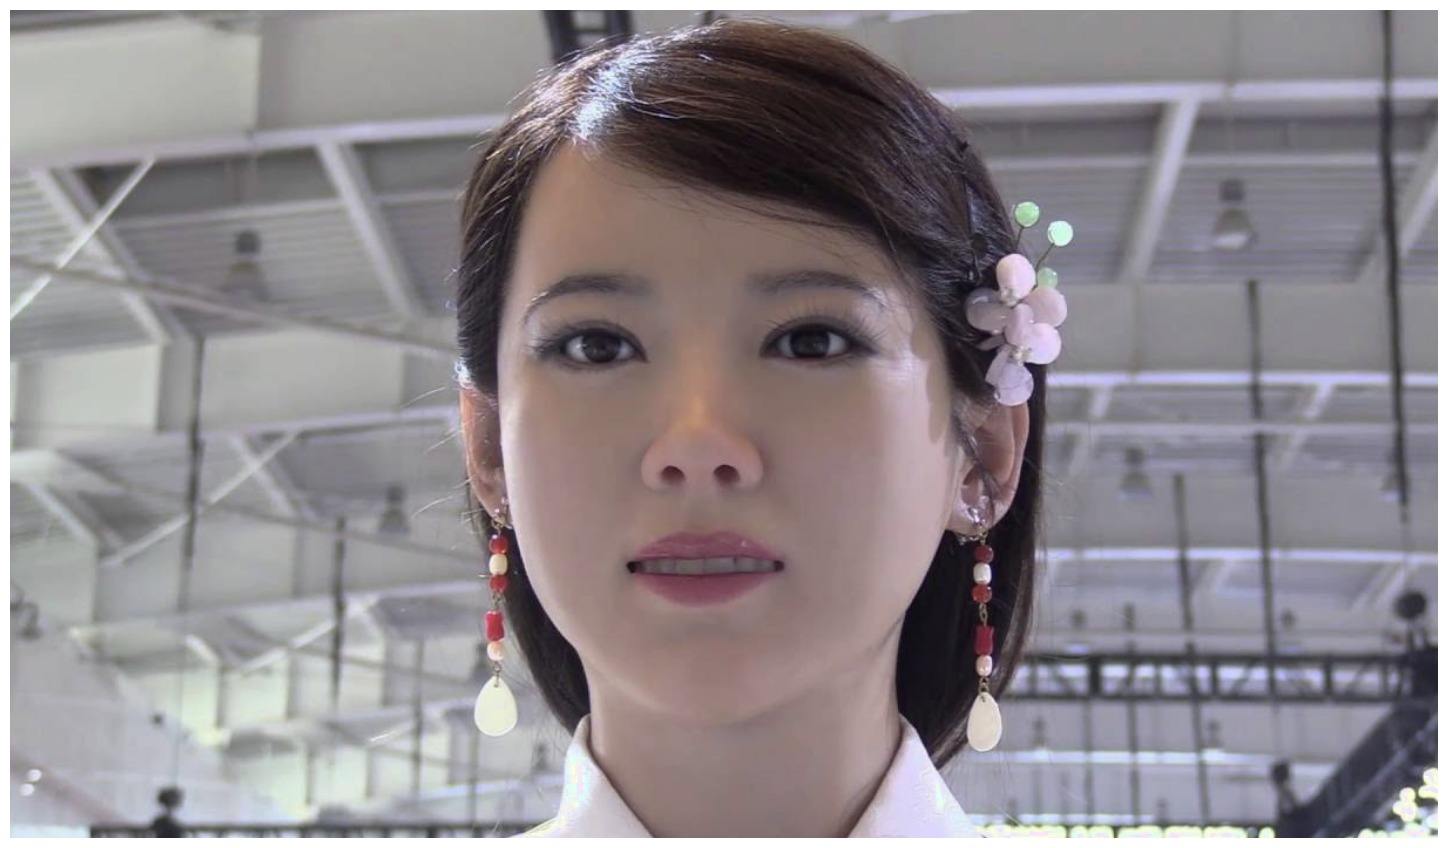 日本美女机器人永远18岁,180万一个你愿意买吗?